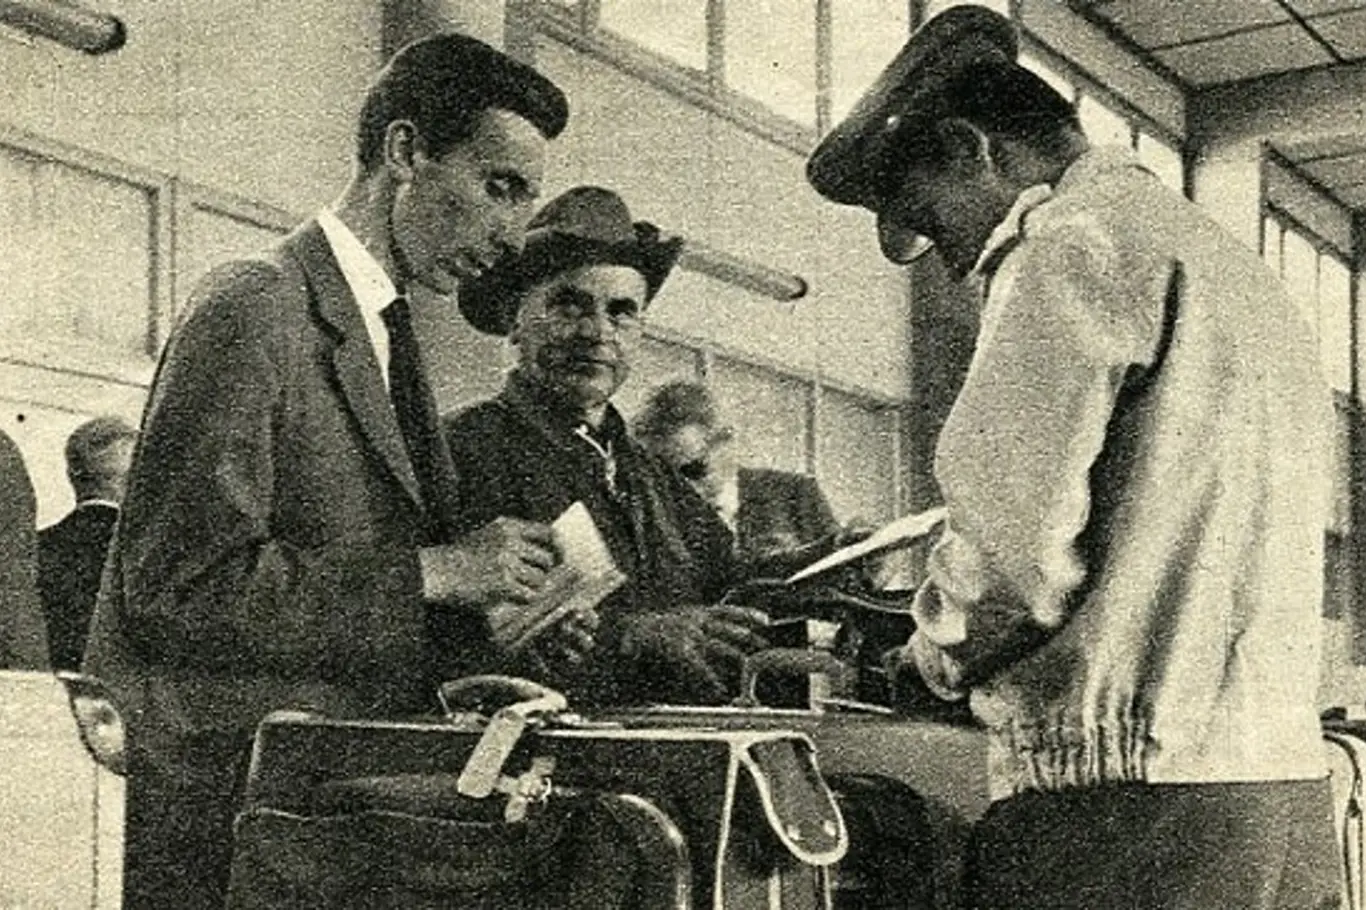 Čechokanaďan Leo Žambůrek (druhý zleva) po příletu do Prahy v roce 1965.